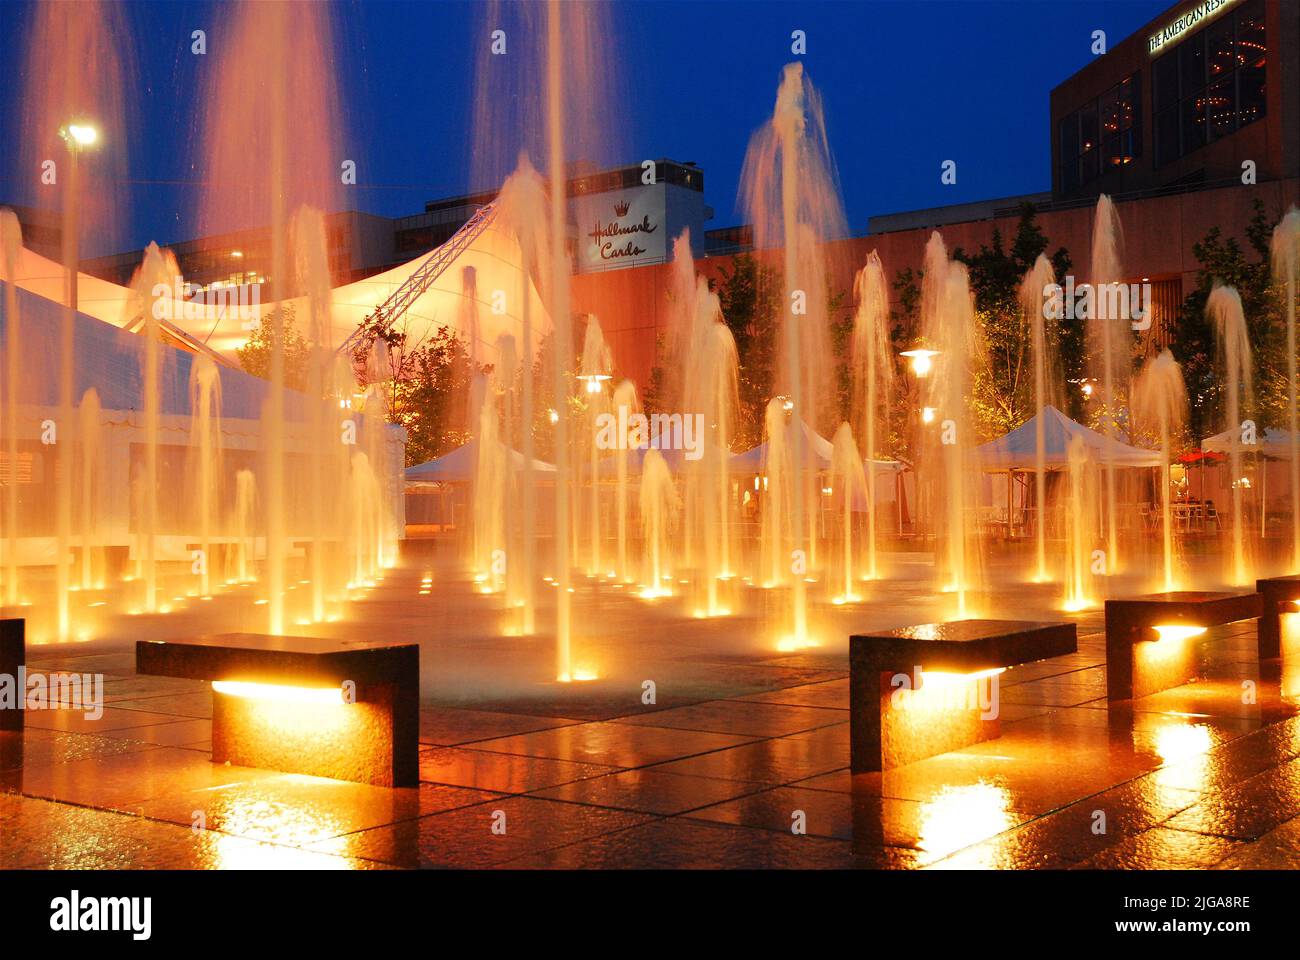 Wasserfontänen des Crown Plaza in Kansas City Missouri werden in der Dämmerung beleuchtet und spiegeln sich im nassen Boden des plaza wider Stockfoto